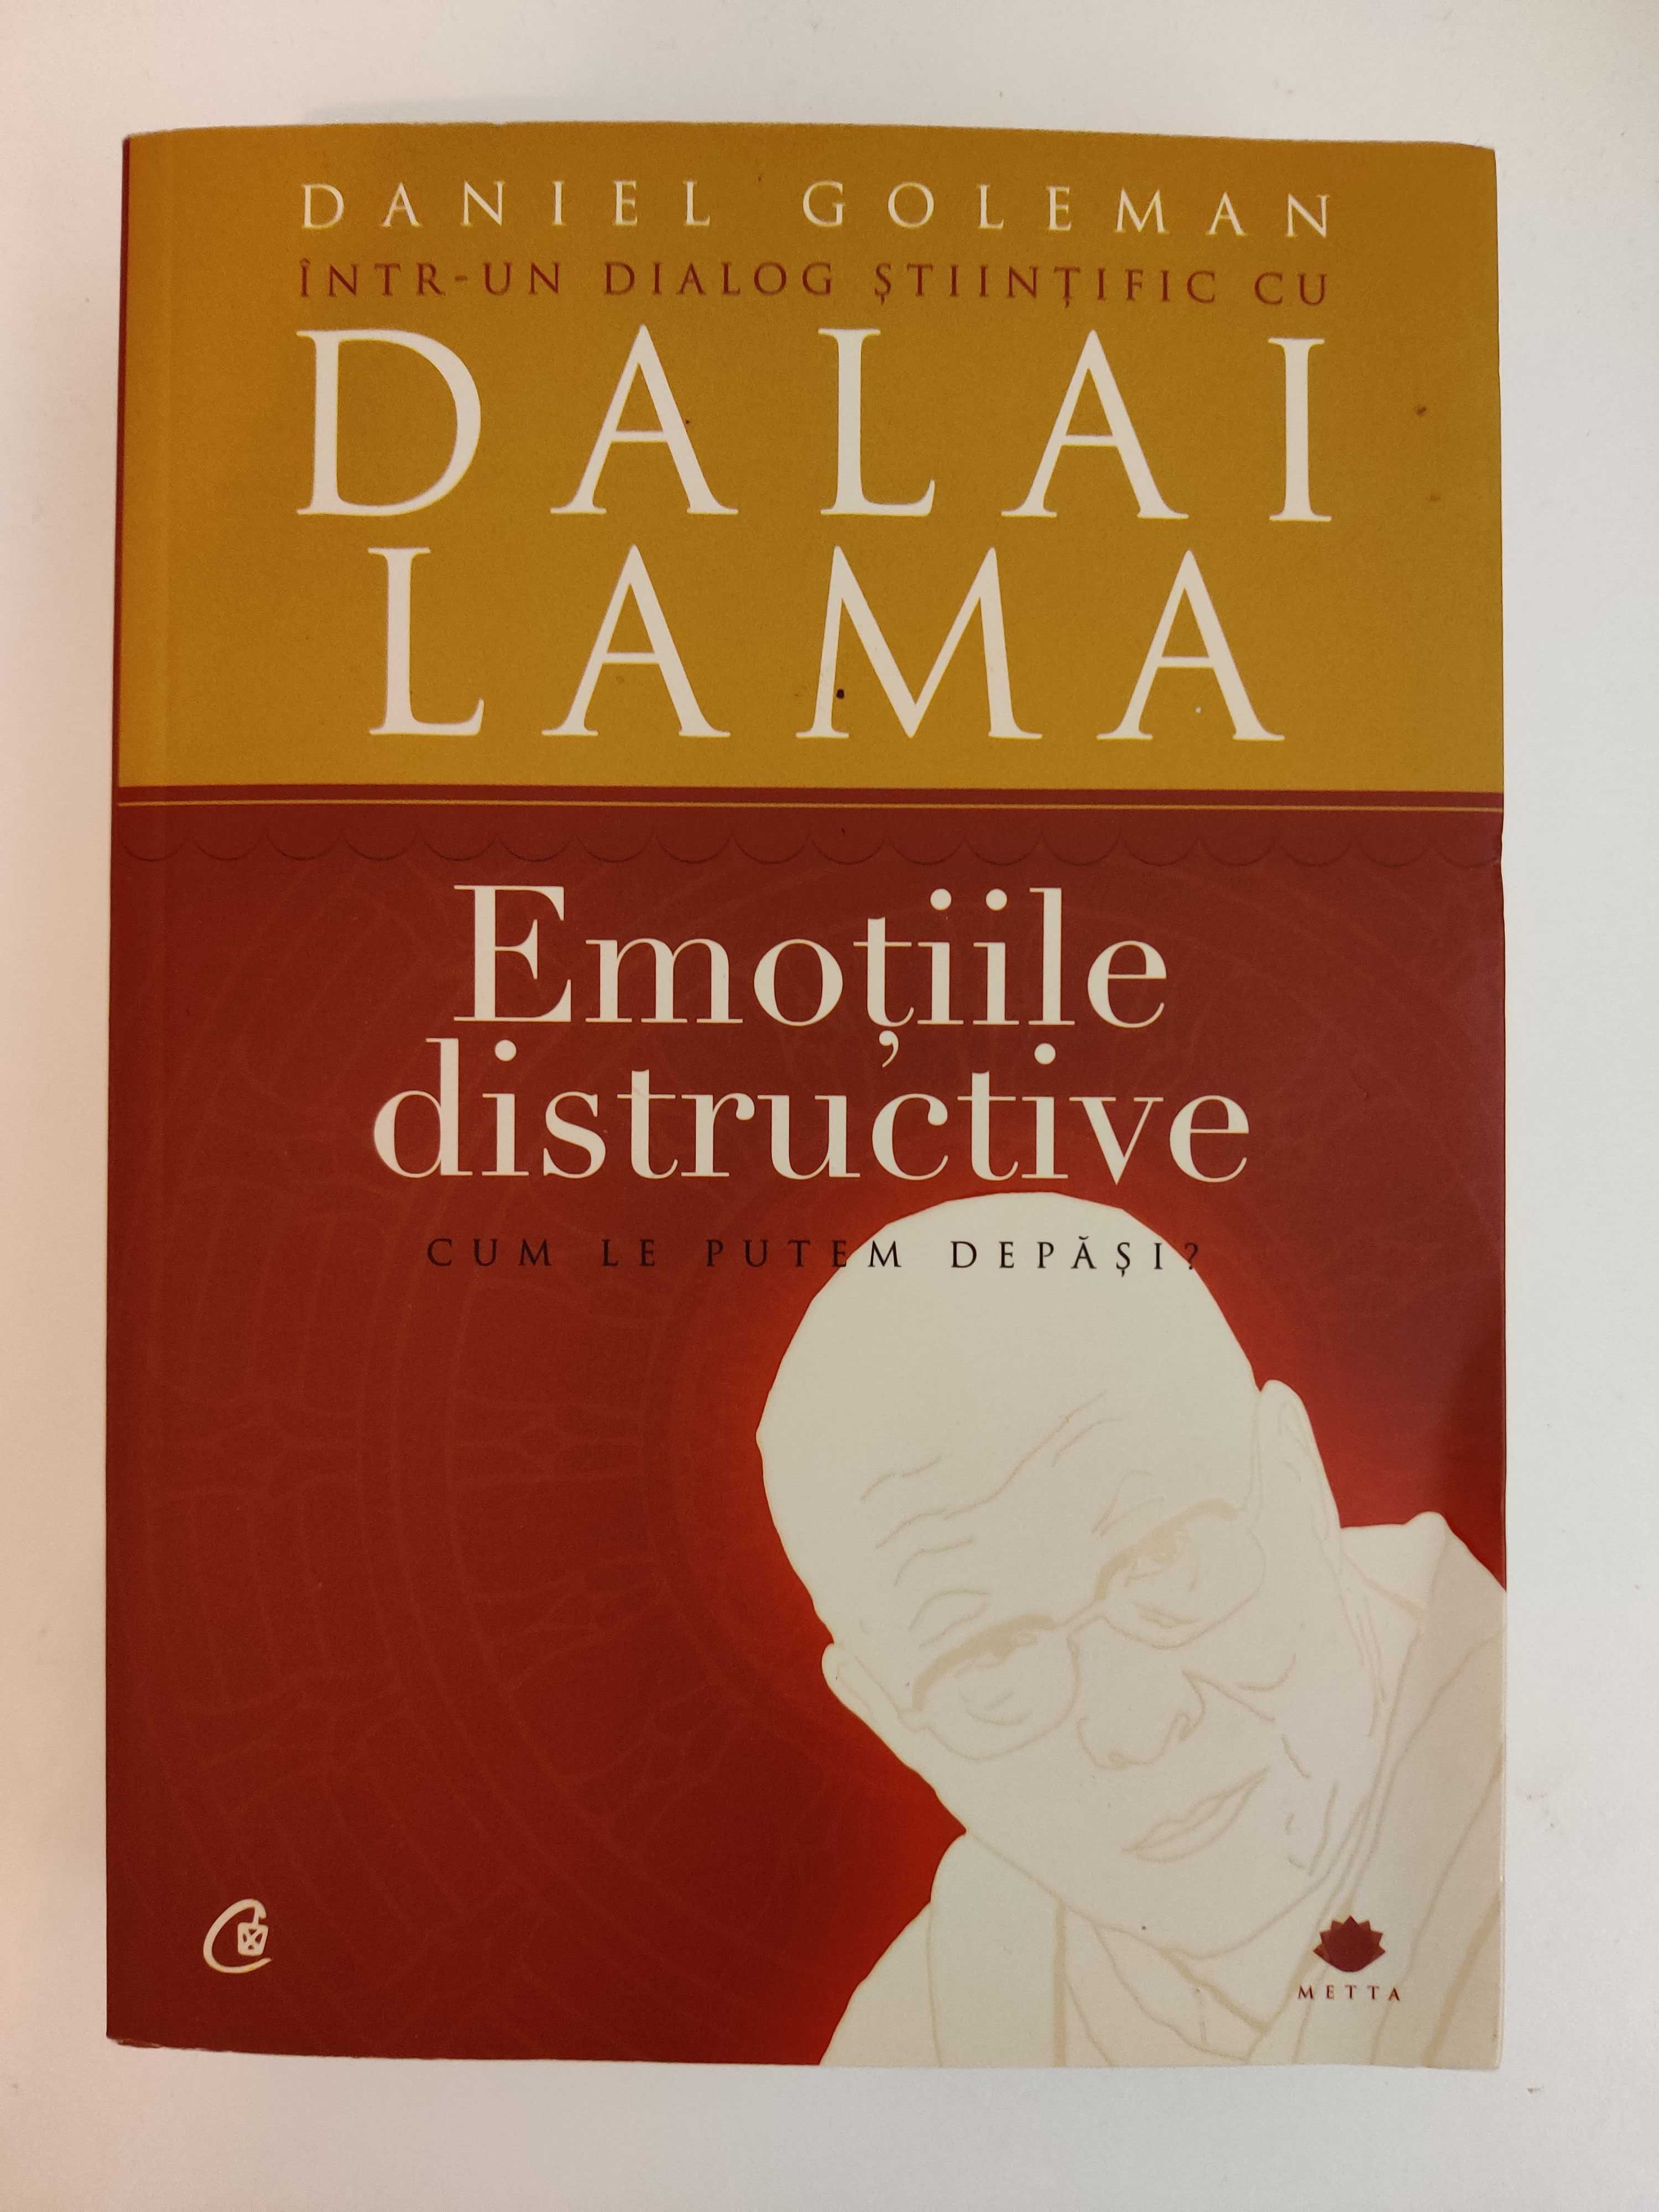 Emotiile distructive - Dialog ştiinţific cu Dalai Lama